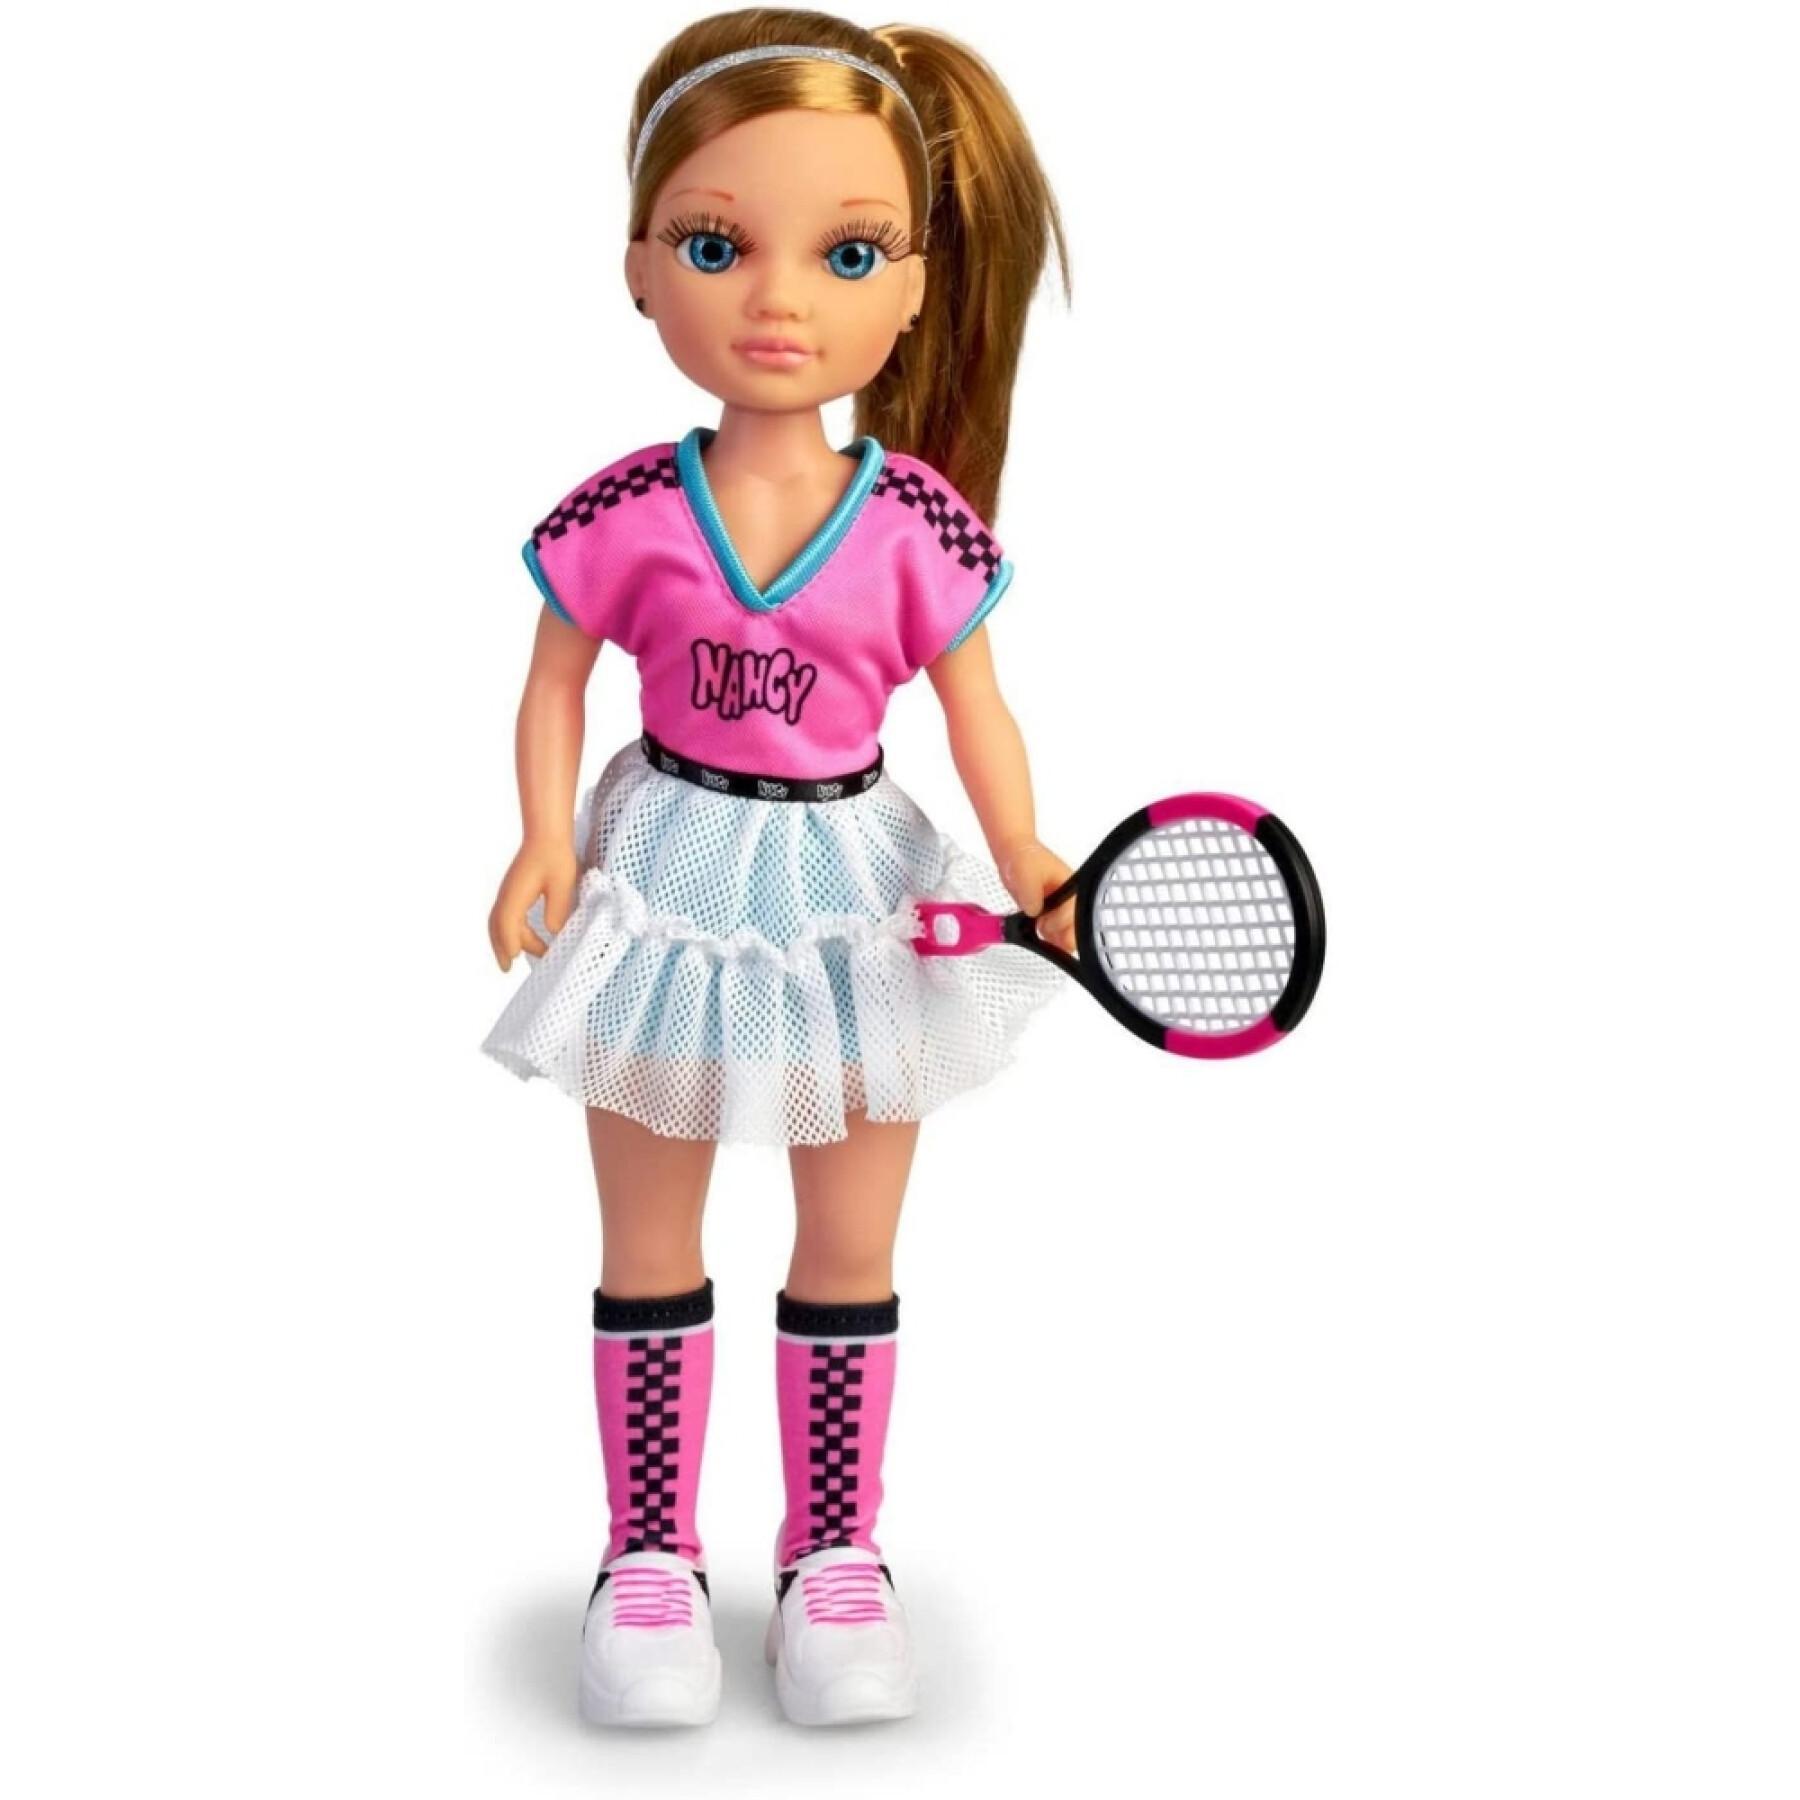 Muñeca Famosa Nancy Trendy Tennis 45 cm